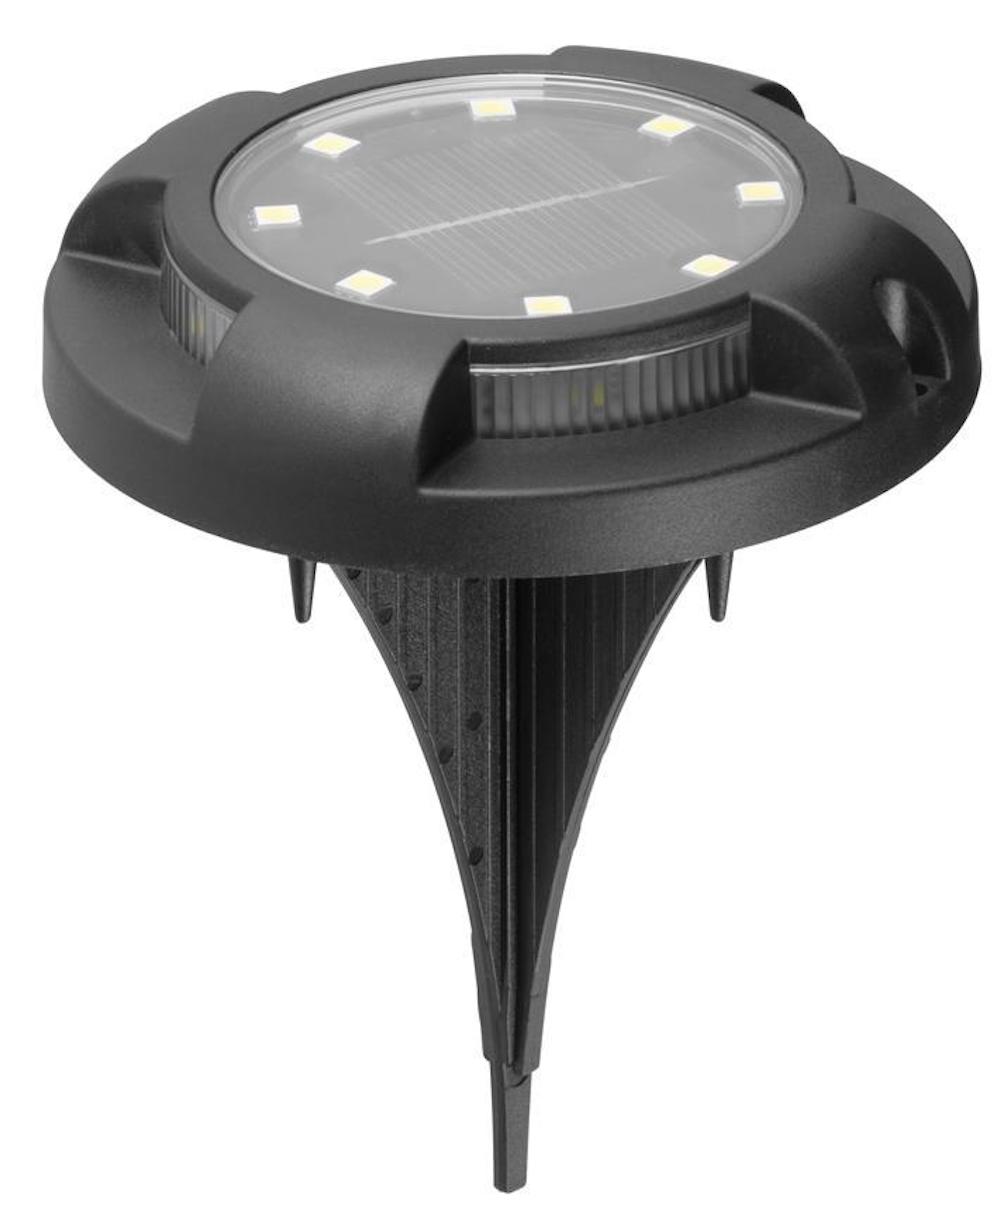 SuperSparSet 2x VENEDIG Solarlampe mit automatischer Einschaltfunktion | HxØ 14x11cm | 12 SMD-LEDs | Automatisches Schalten | Gartenlampe, Rattanlampe, LED Lampe, Solarlampe